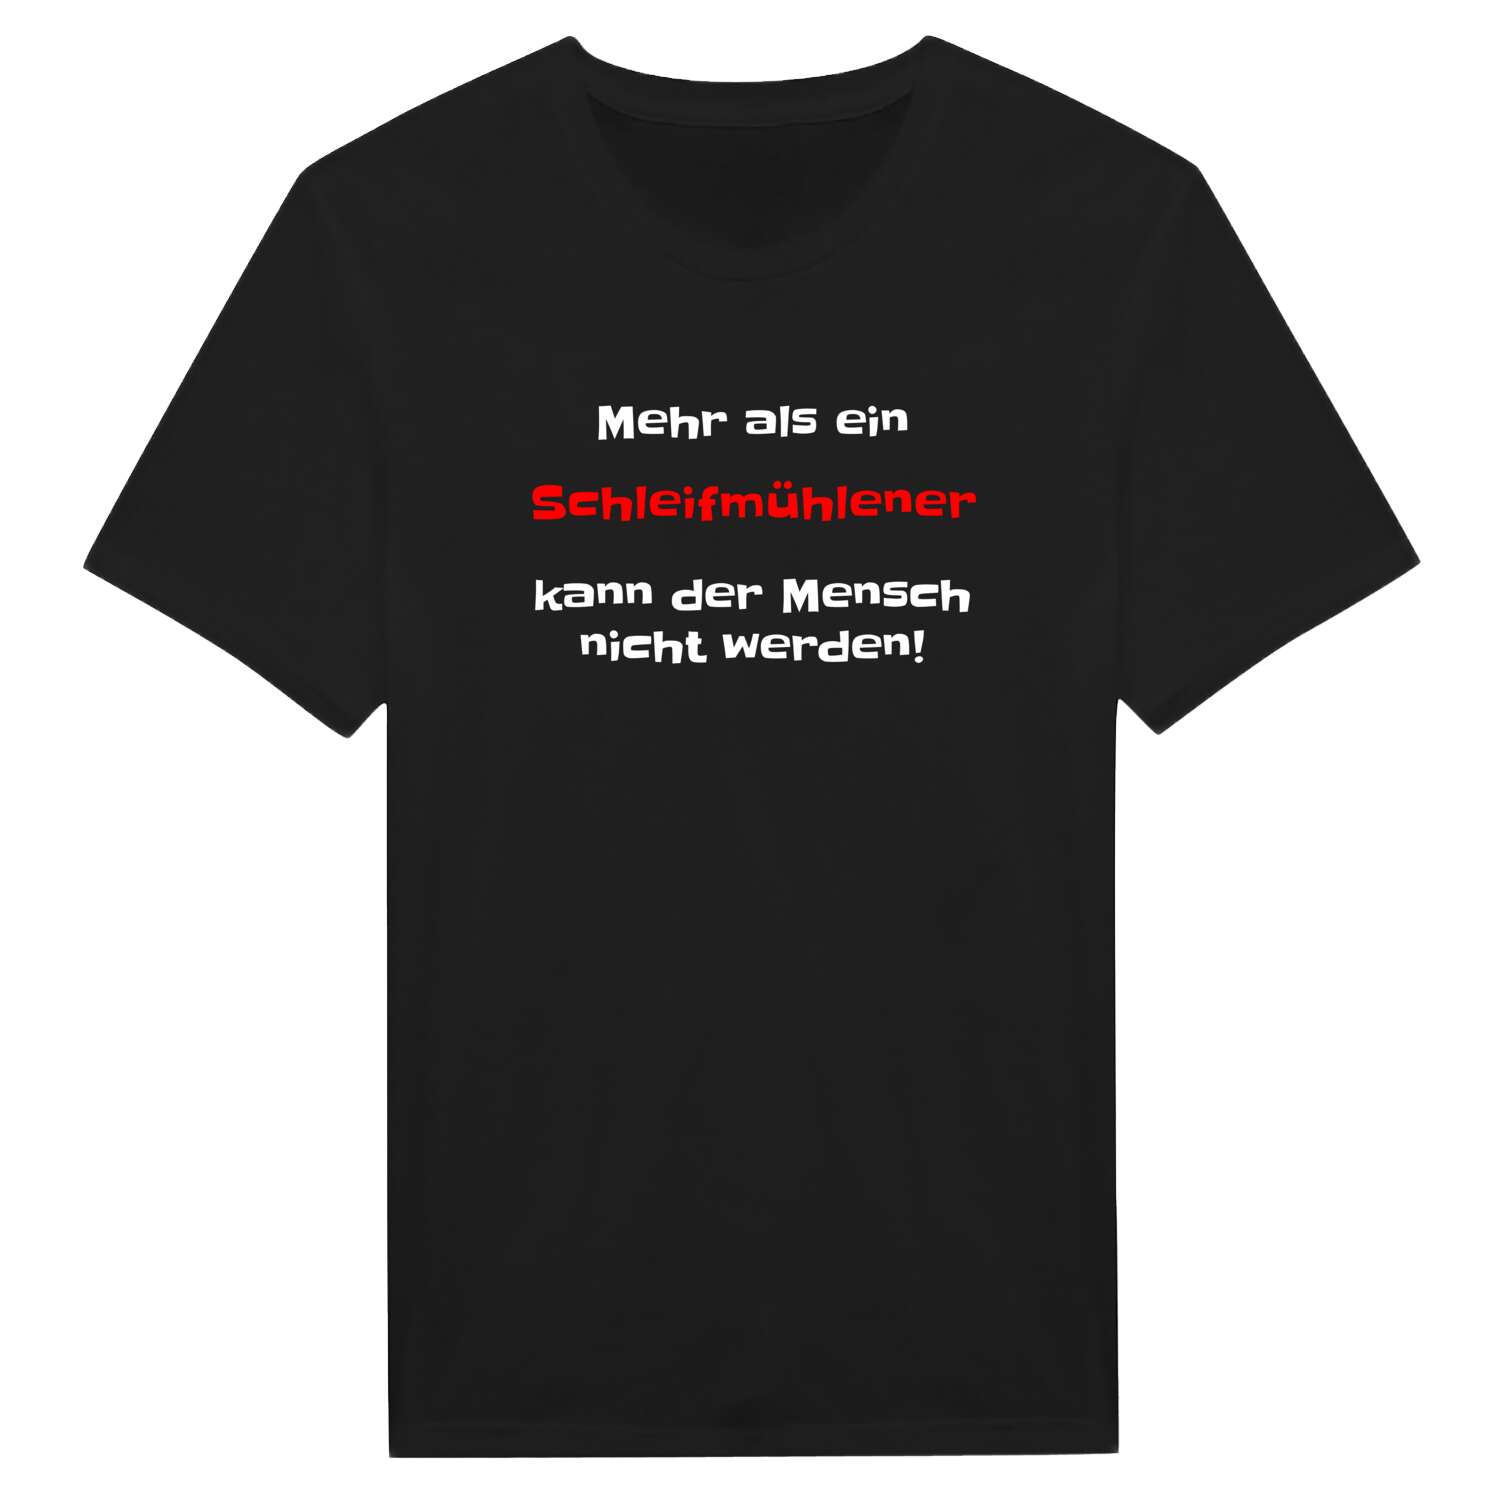 Schleifmühle T-Shirt »Mehr als ein«